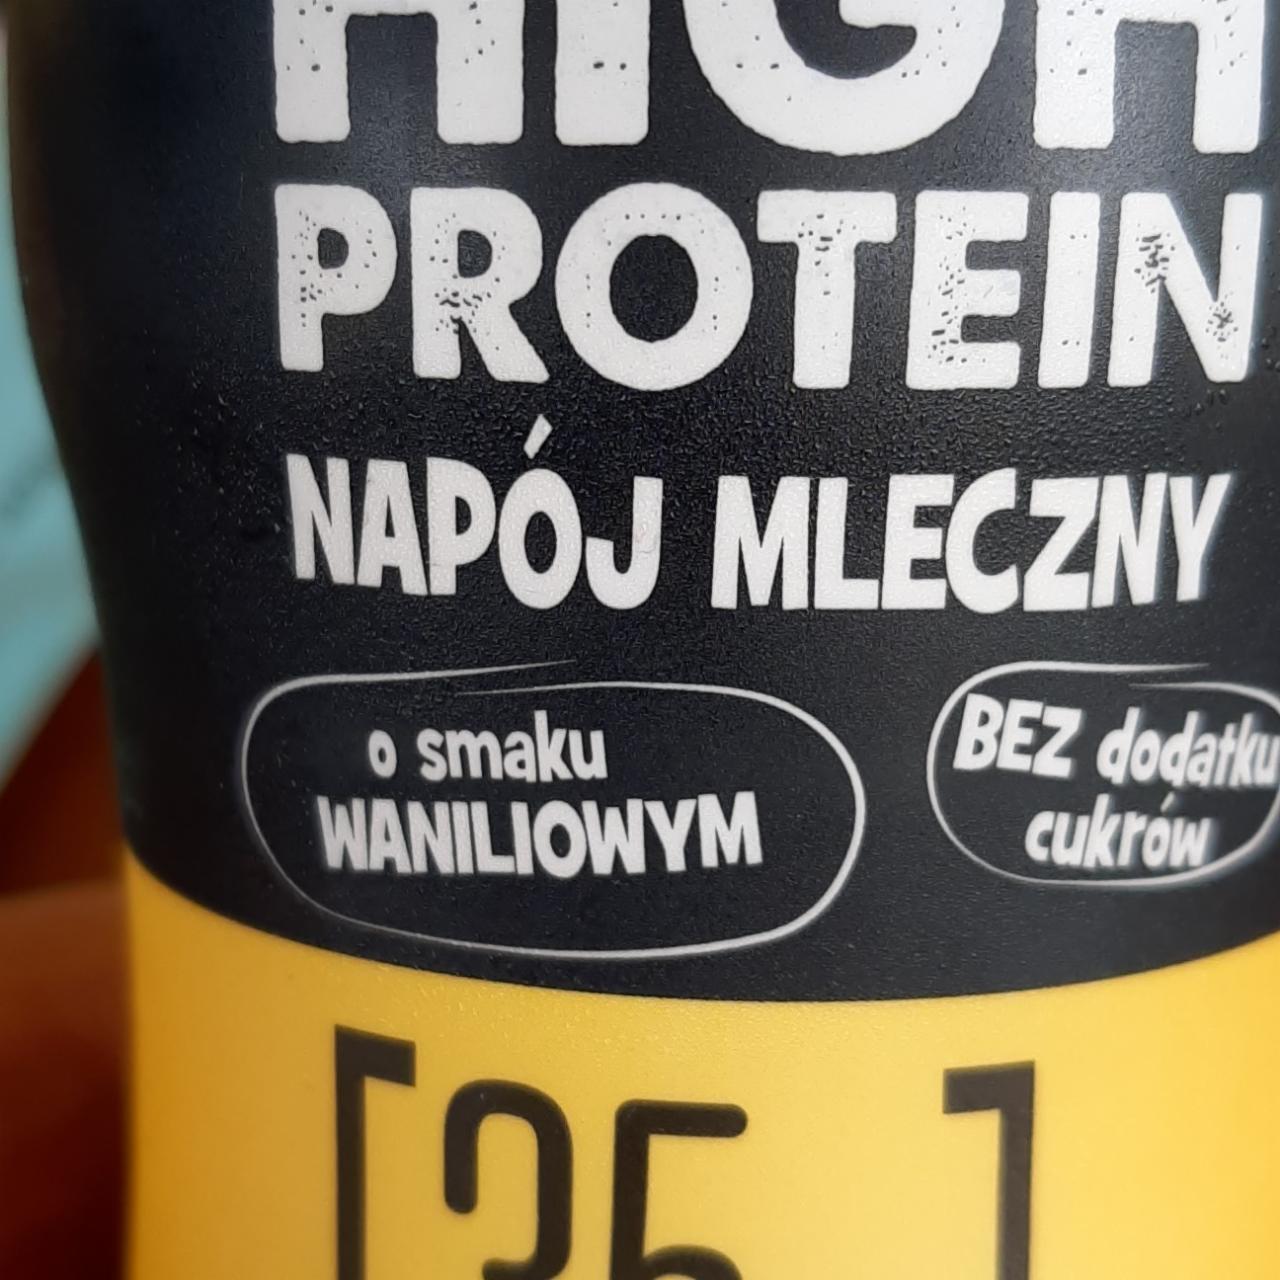 Fotografie - High protein napój mleczny o smaku waniliowym